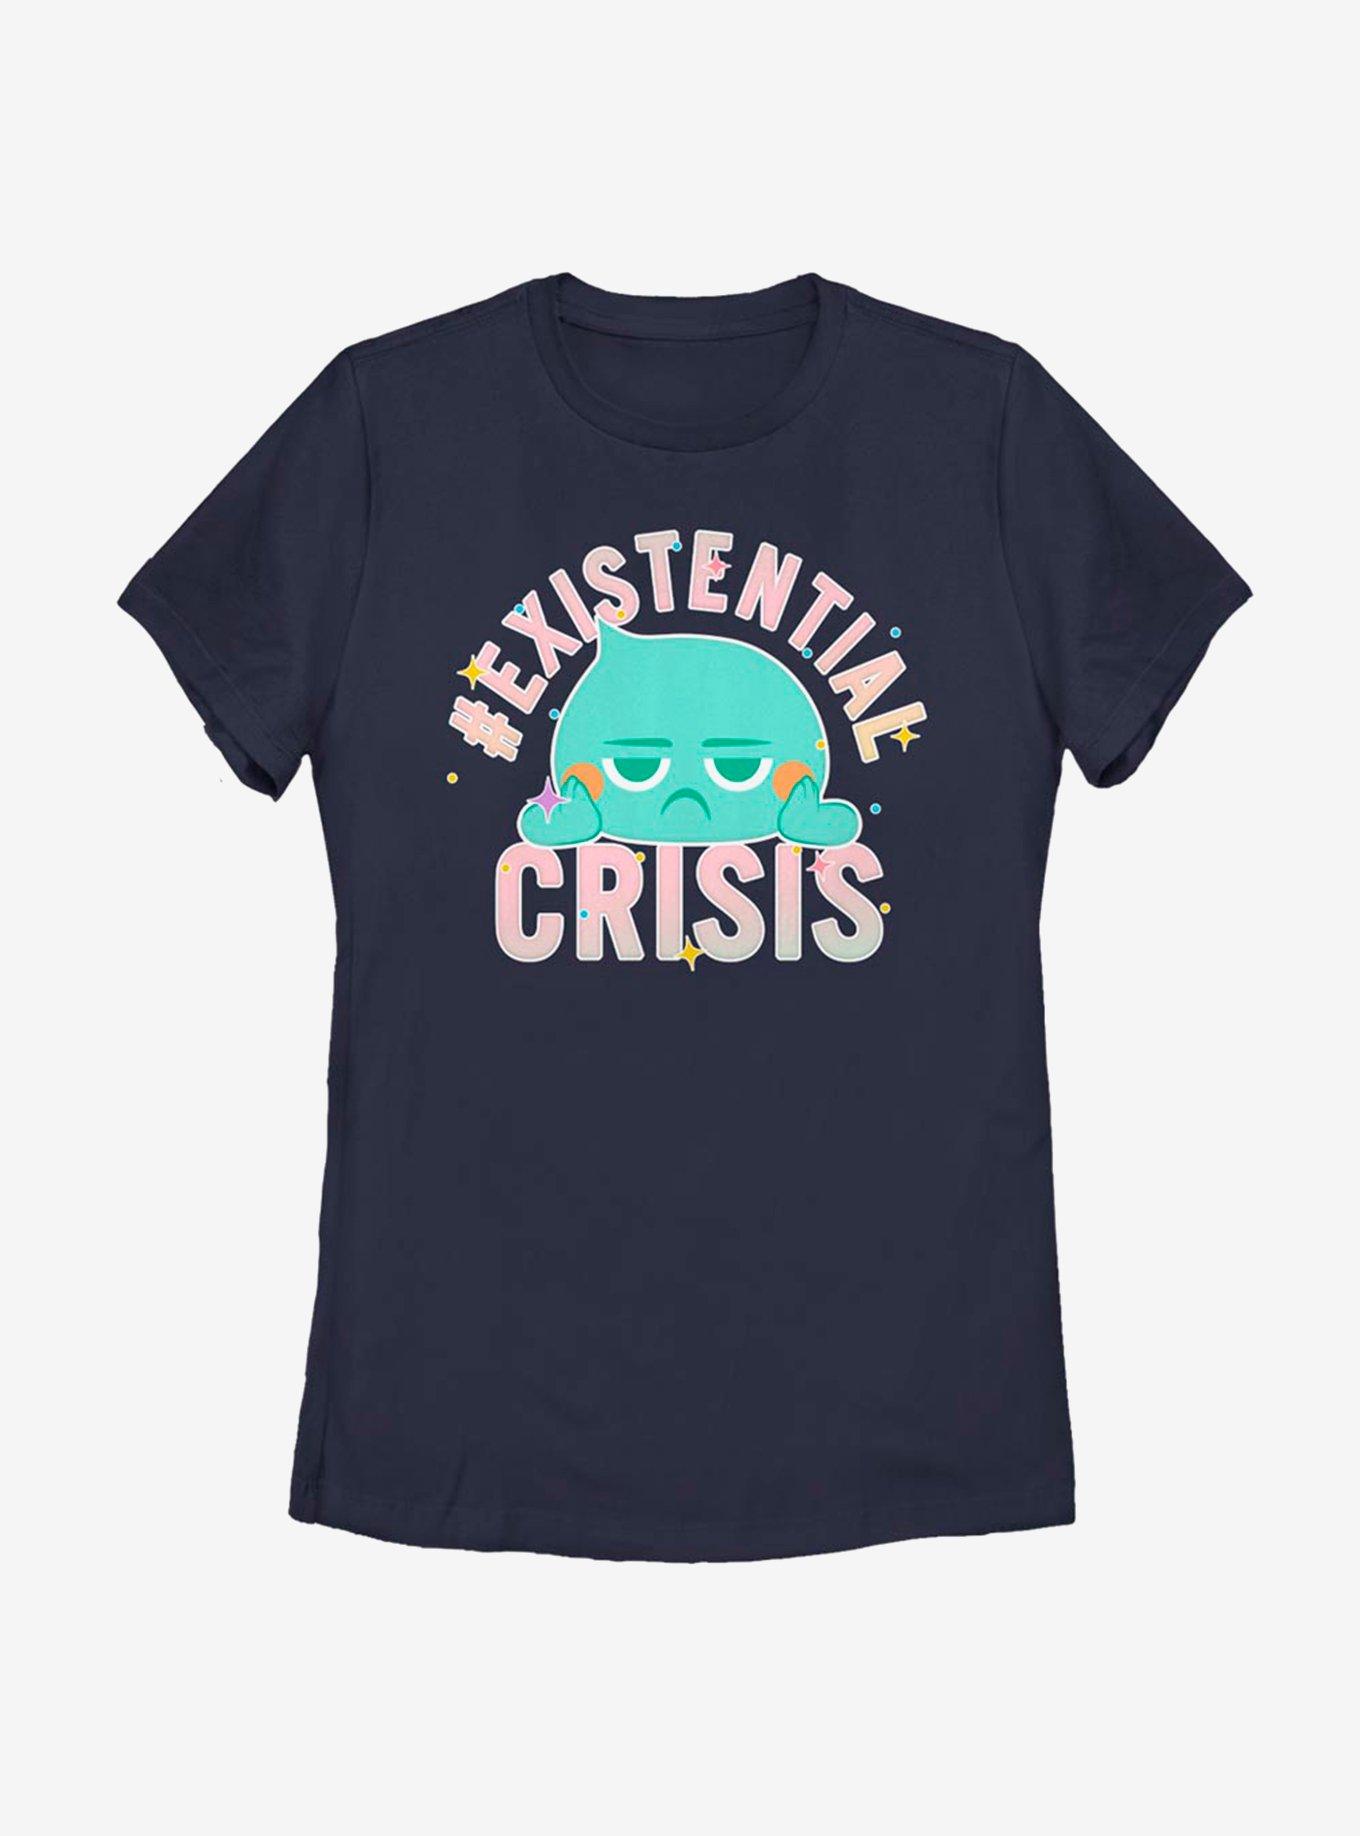 Disney Pixar Soul Existential Crisis Womens T-Shirt, NAVY, hi-res